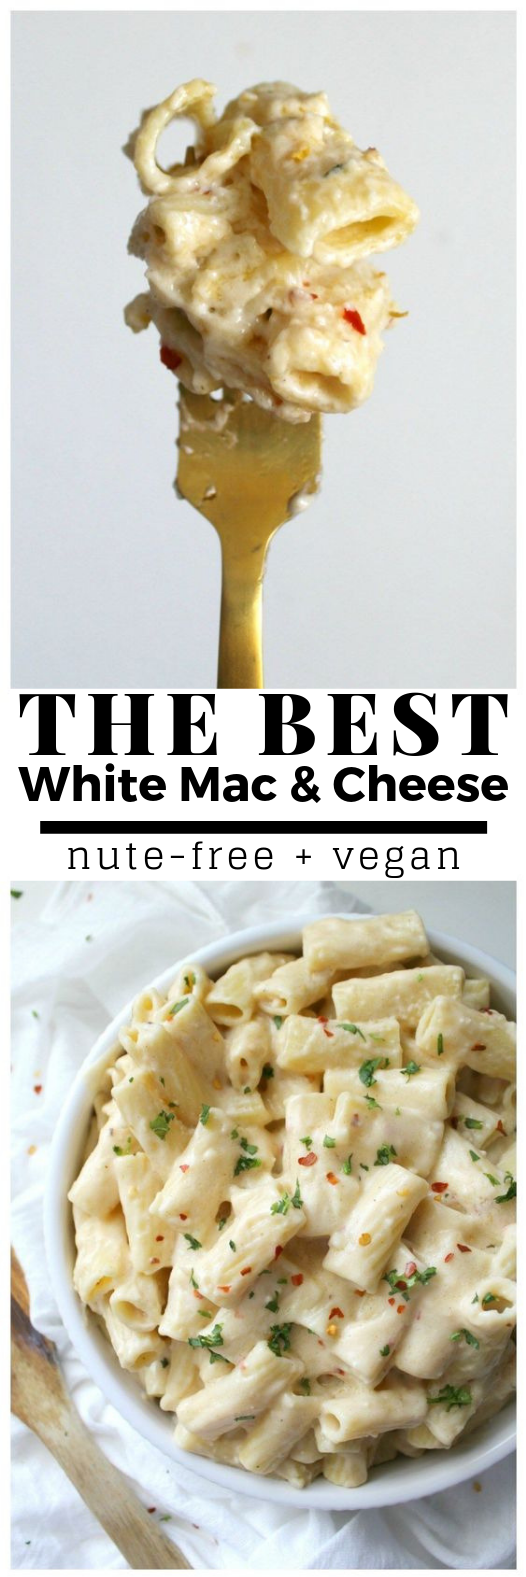 BEST VEGAN WHITE MAC AND CHEESE #Vegan #HealthyFood